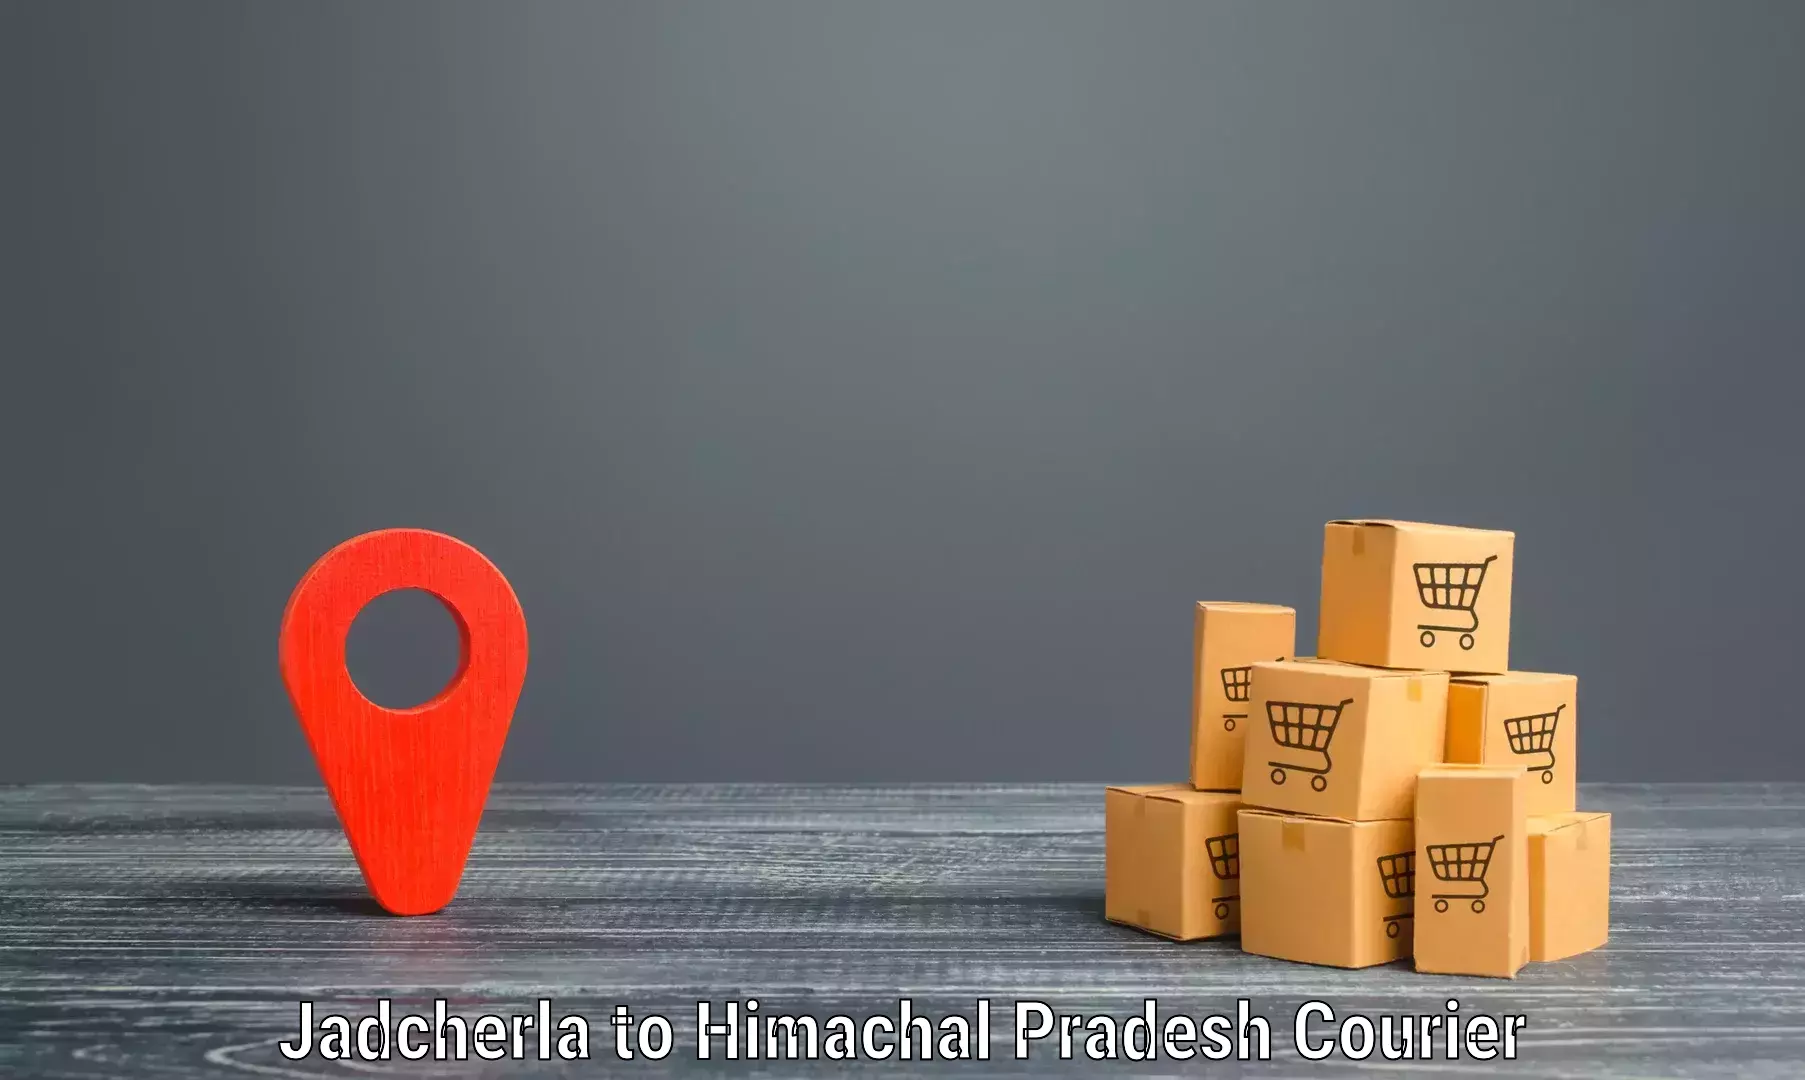 Speedy delivery service Jadcherla to Dehra Gopipur